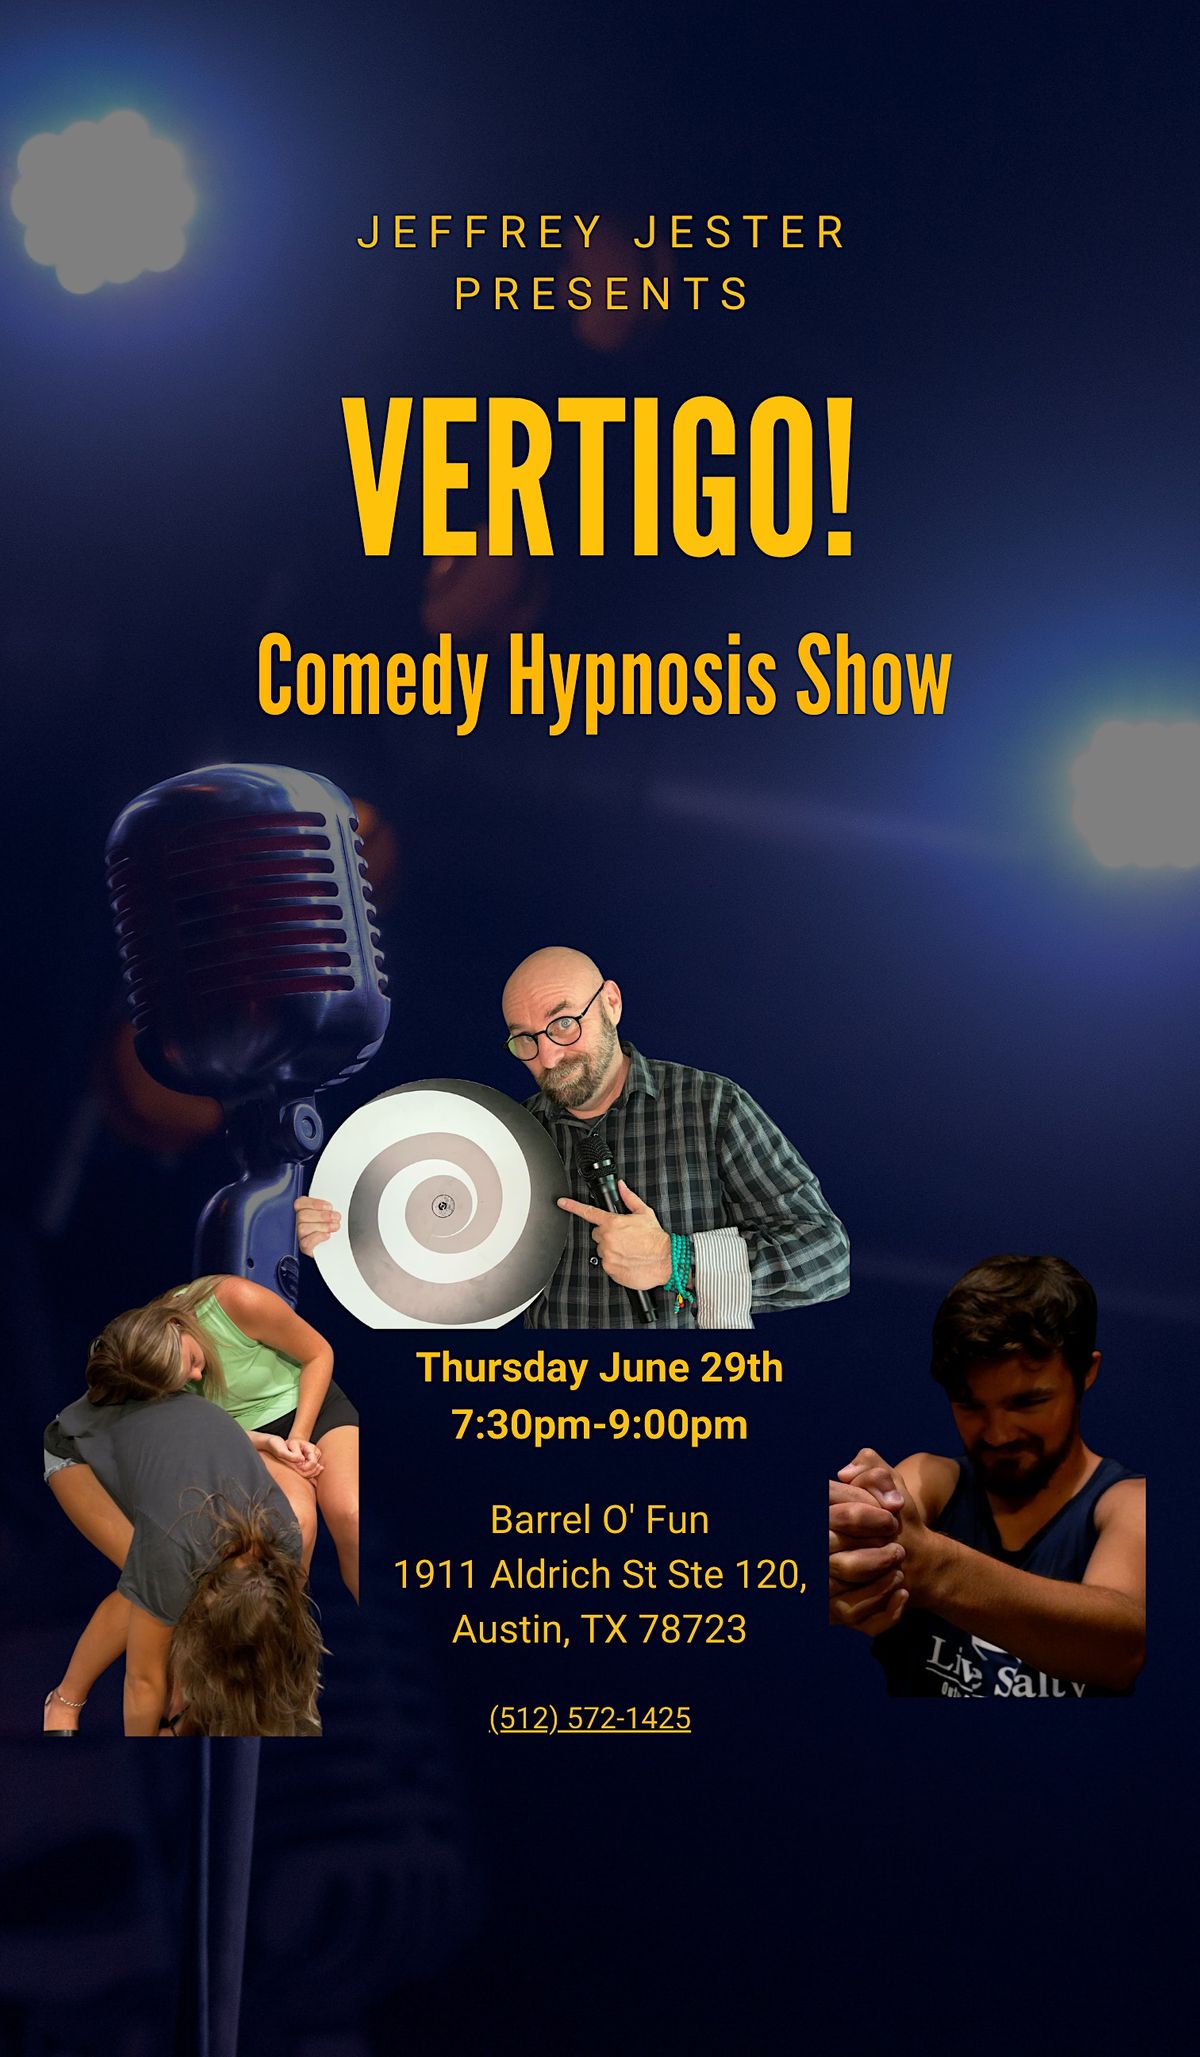 Vertigo! Comedy Hypnosis Show